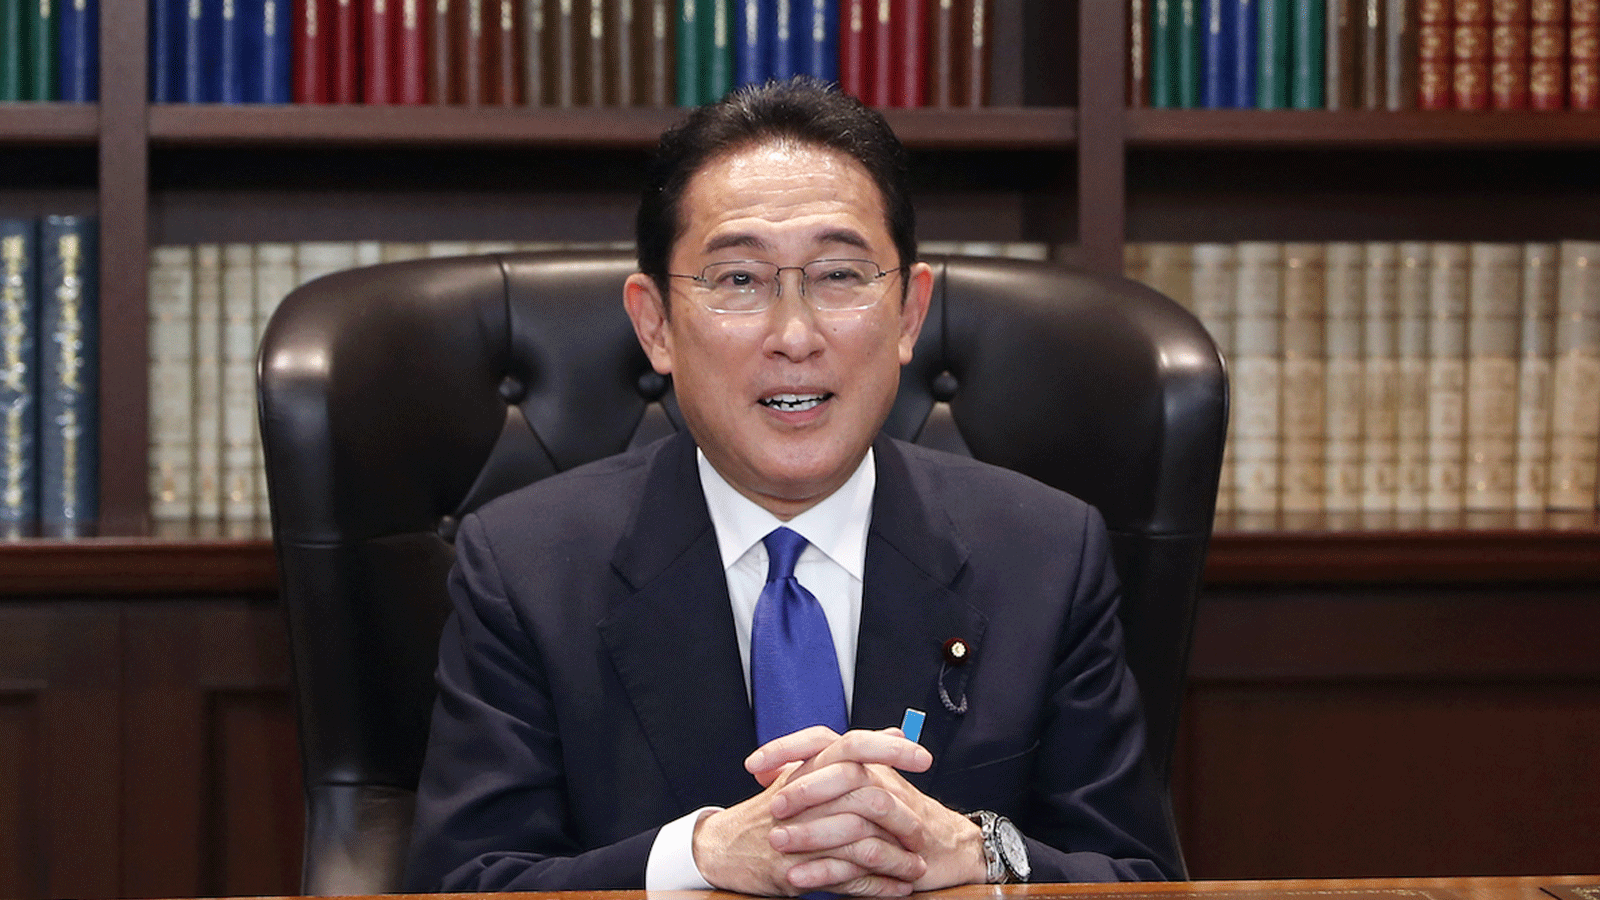 فوميو كيشيدا ، وزير الخارجية السابق ، بعد انتخابه زعيما جديدا للحزب الليبرالي الديمقراطي الحاكم في طوكيو في 29 أيلول/سبتمبر 2021.